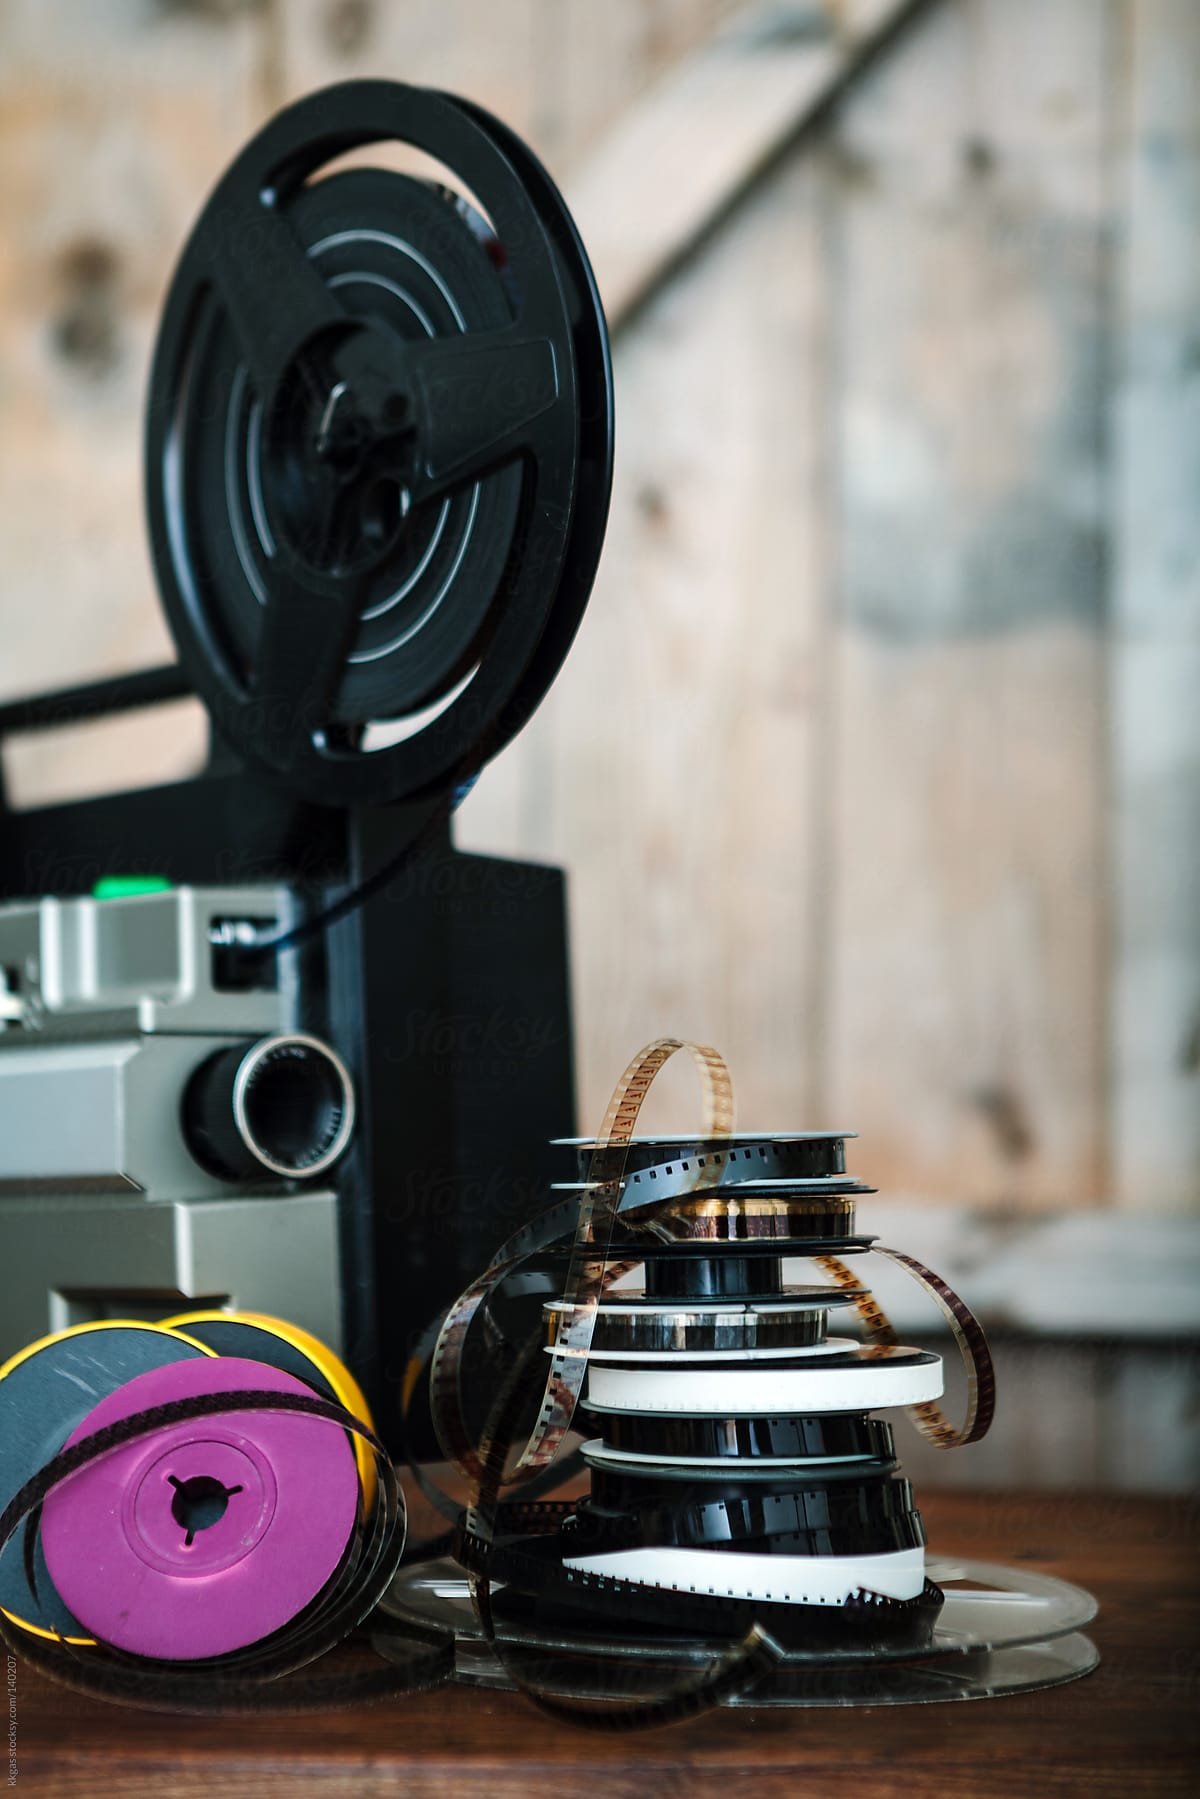 Super 8 film reels and projector